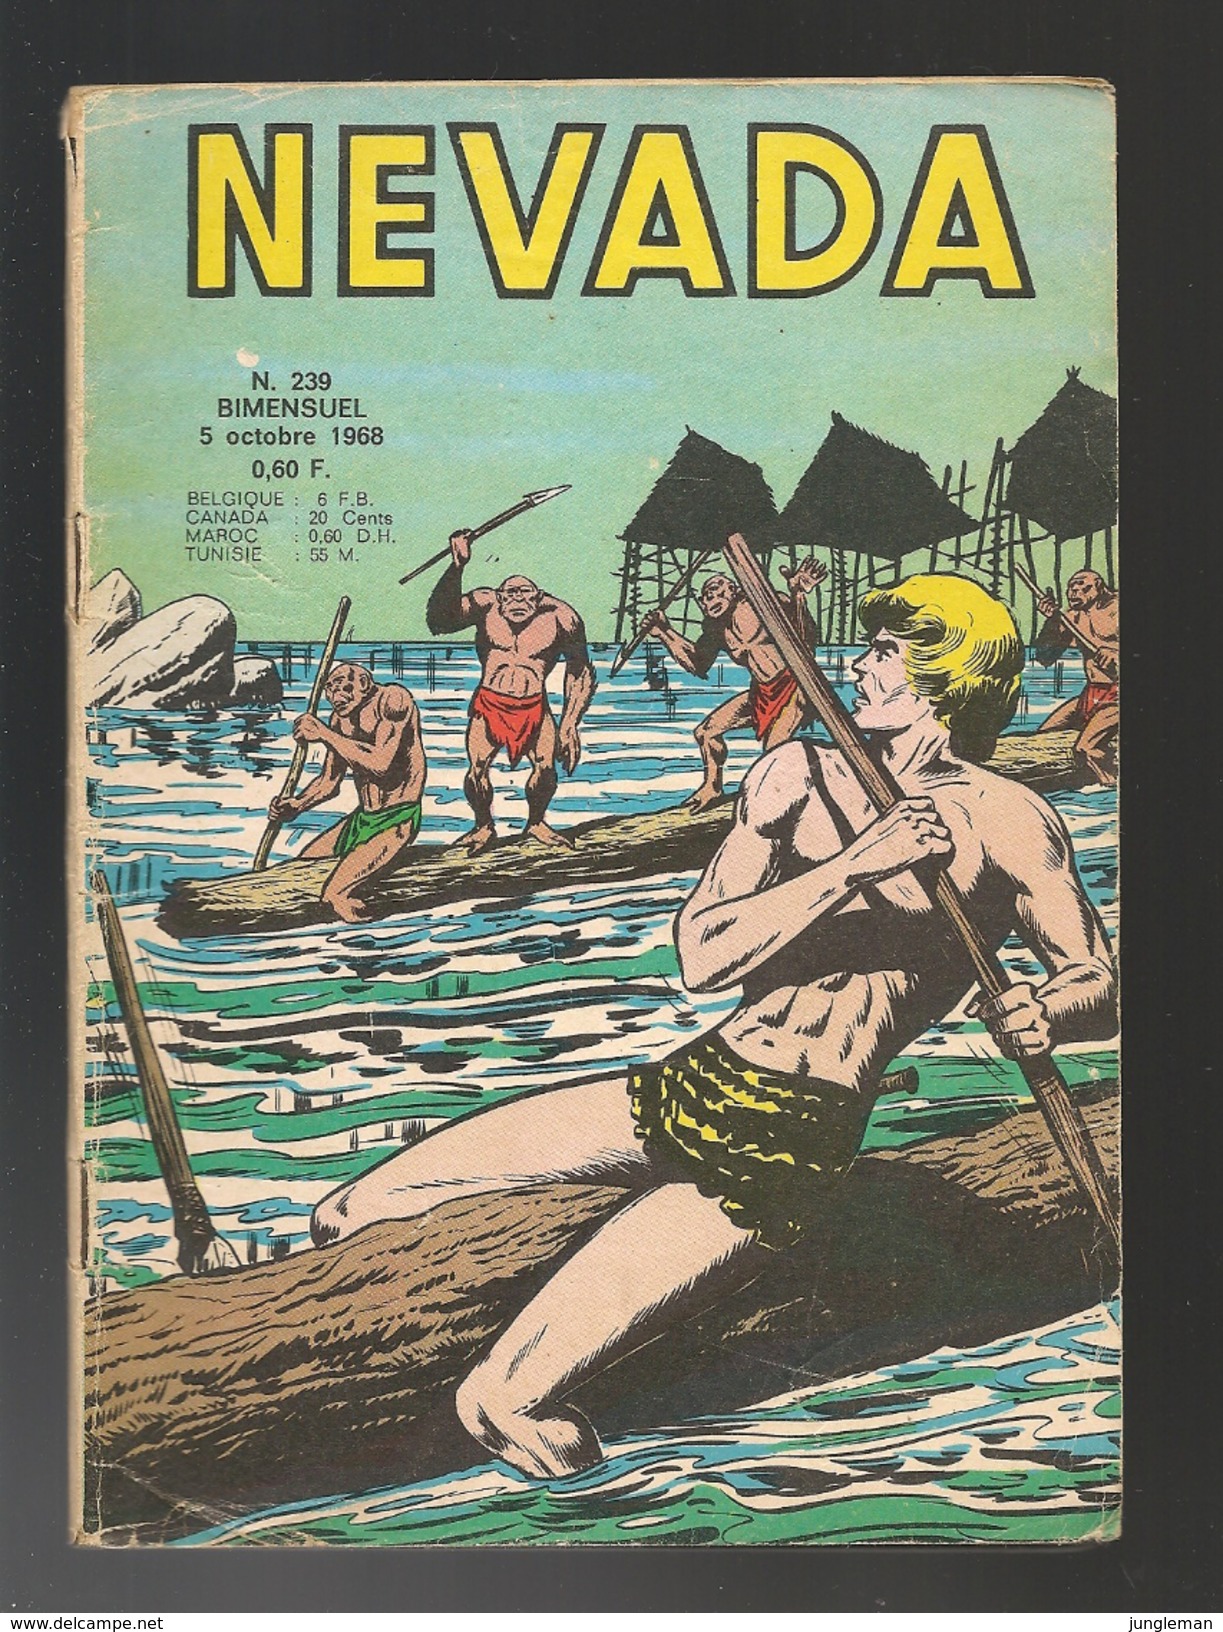 Nevada N° 239 - Editions LUG à Lyon - Octobre 1968 - Avec Miki Le Ranger Et Tanka Le Fils De La Jungle - BE - Nevada